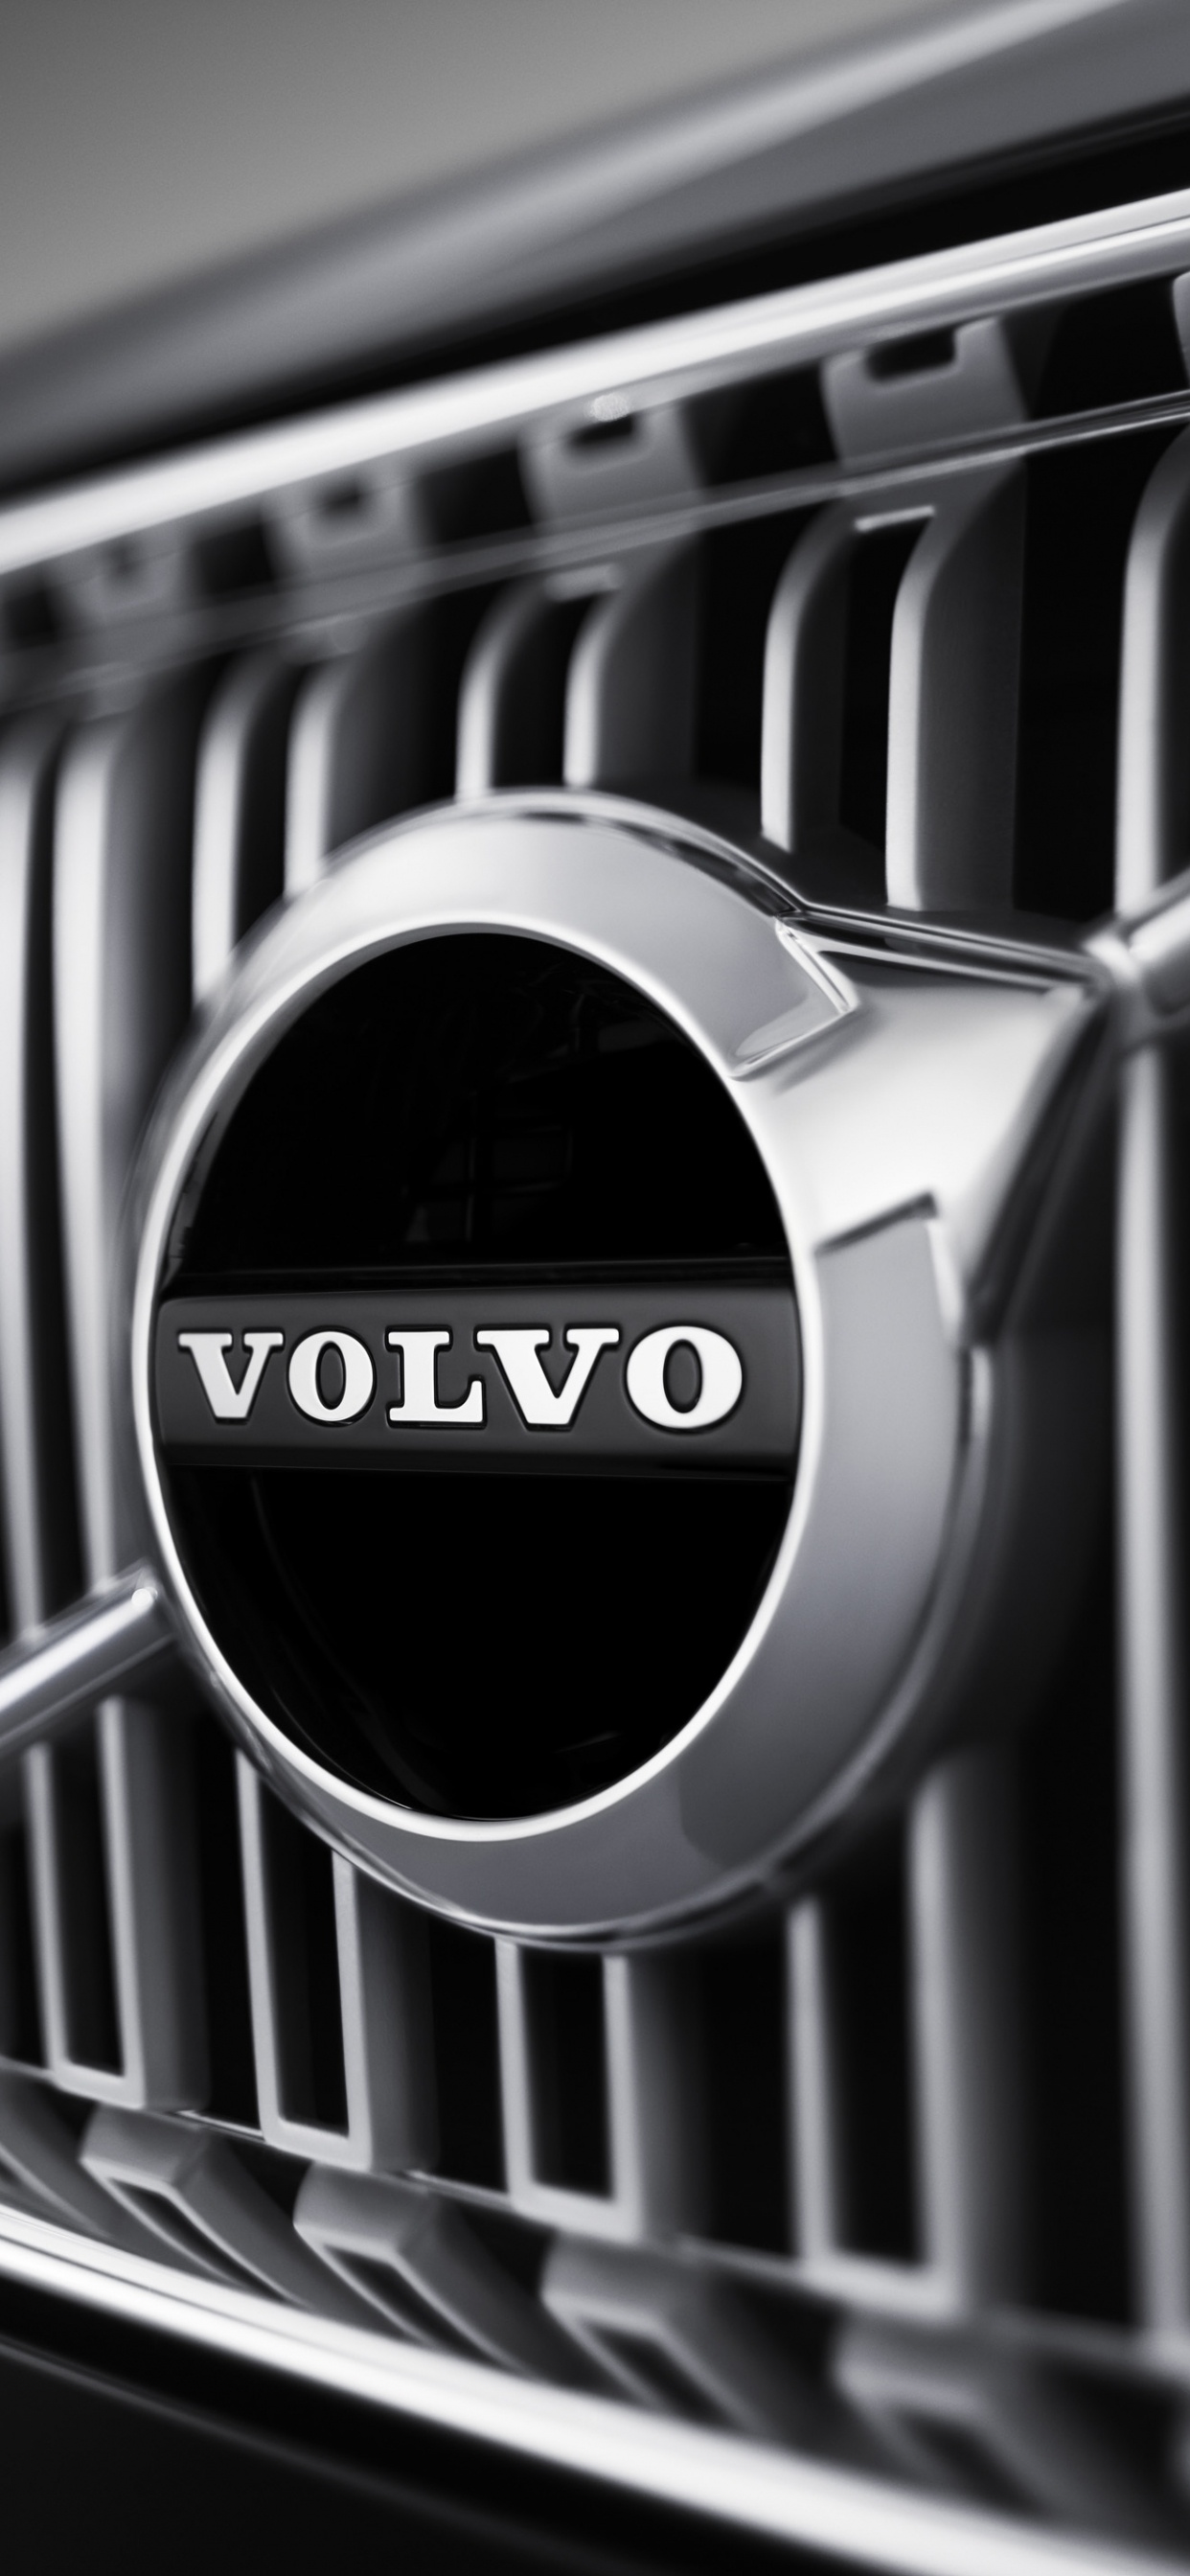 ab Volvo, Voitures Volvo, Voiture, Grille, Noir et Blanc. Wallpaper in 1242x2688 Resolution